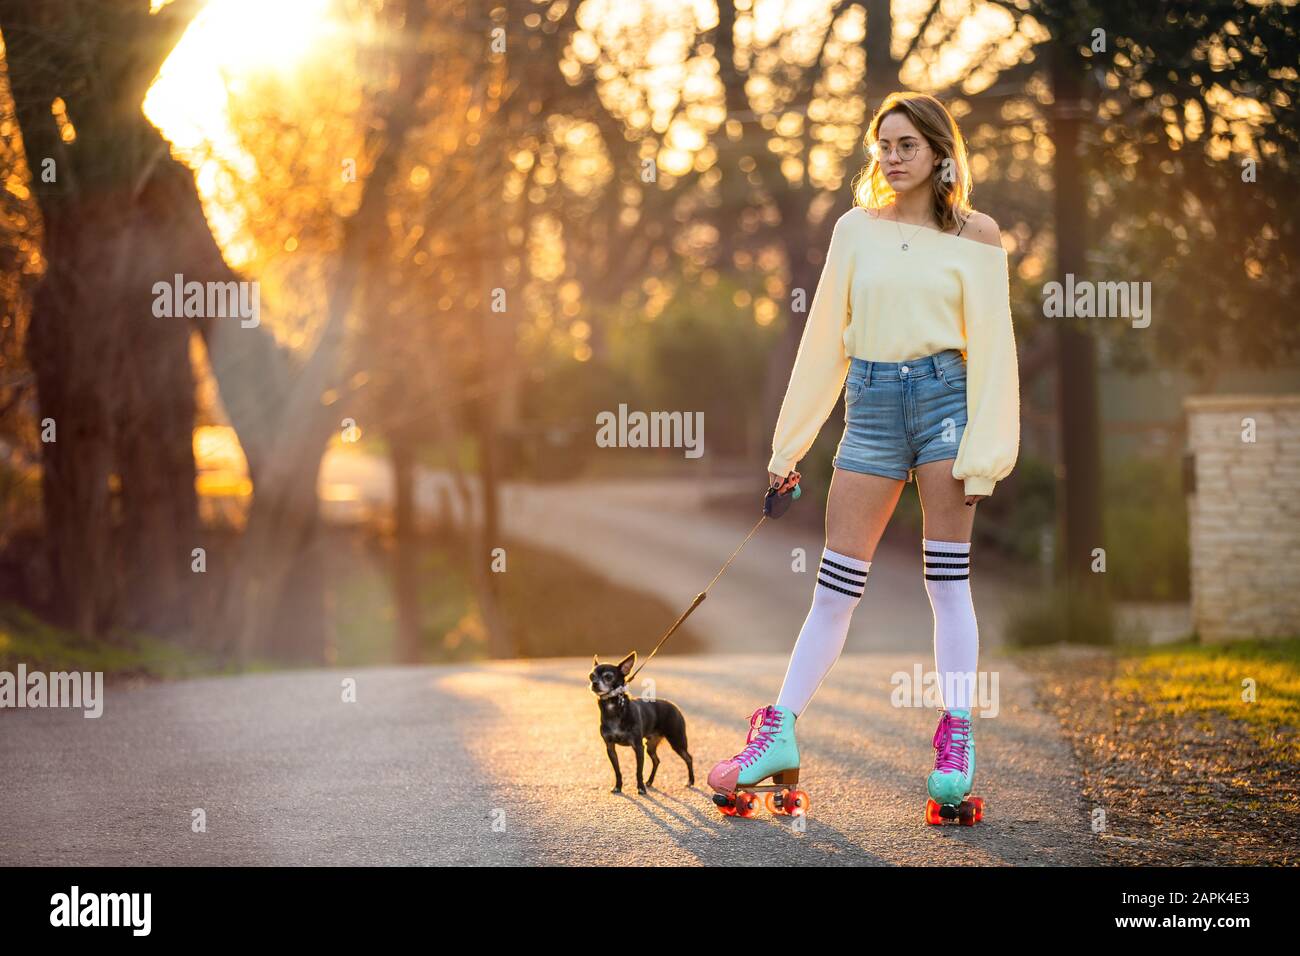 Divertente ritratto di un proprietario eccentrico unico animale domestico su pattini a rotelle camminare un piccolo cane cihuahua cucciolo sulla strada del quartiere in colorati gambaletti alto ginocchio Foto Stock